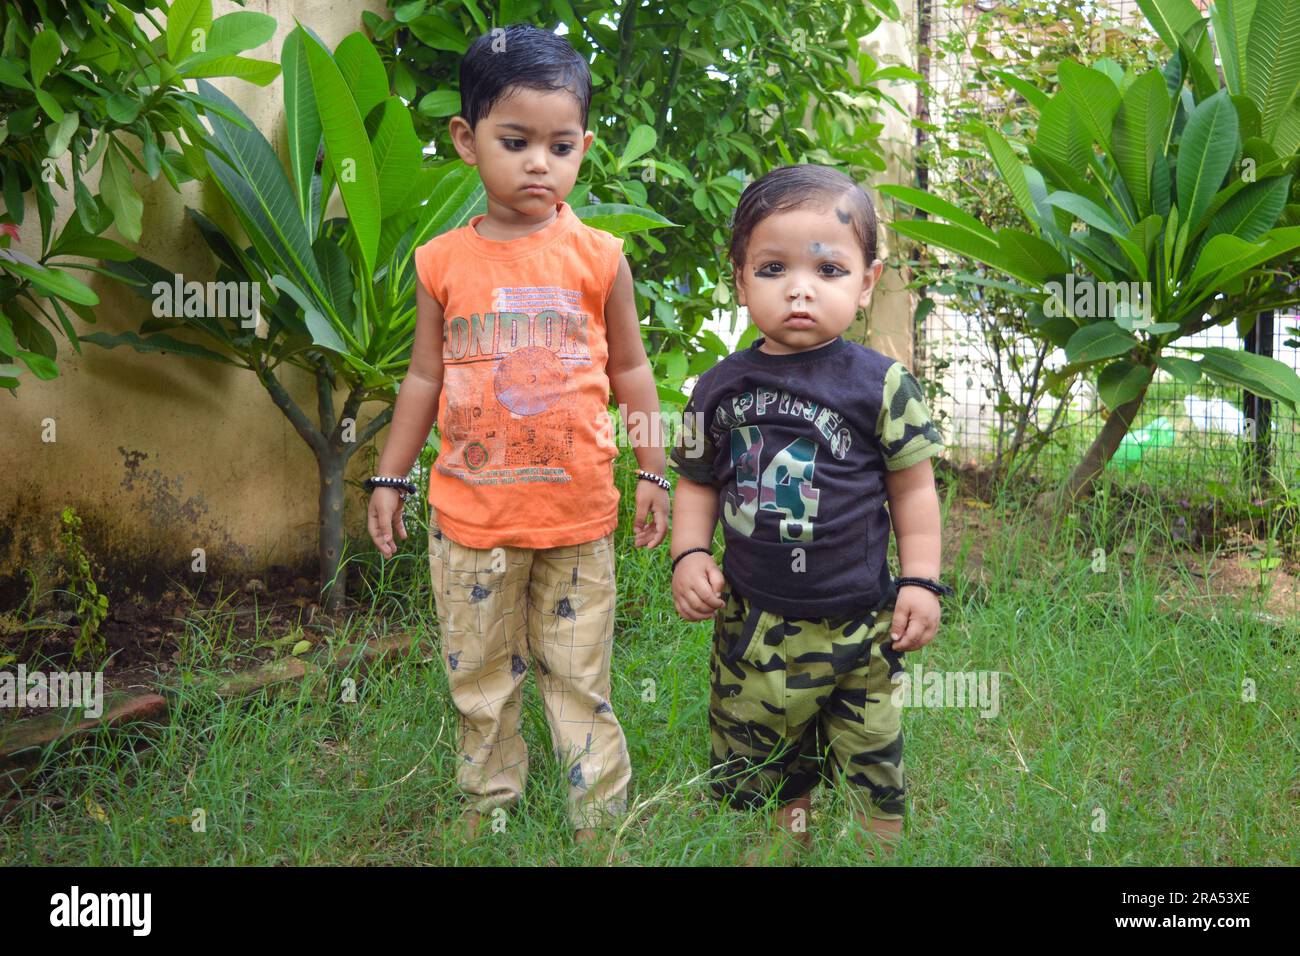 TIKAMGARH, MADHYA PRADESH, INDIA - AUGUST 13, 2022: Boy and girl playing in park. Stock Photo